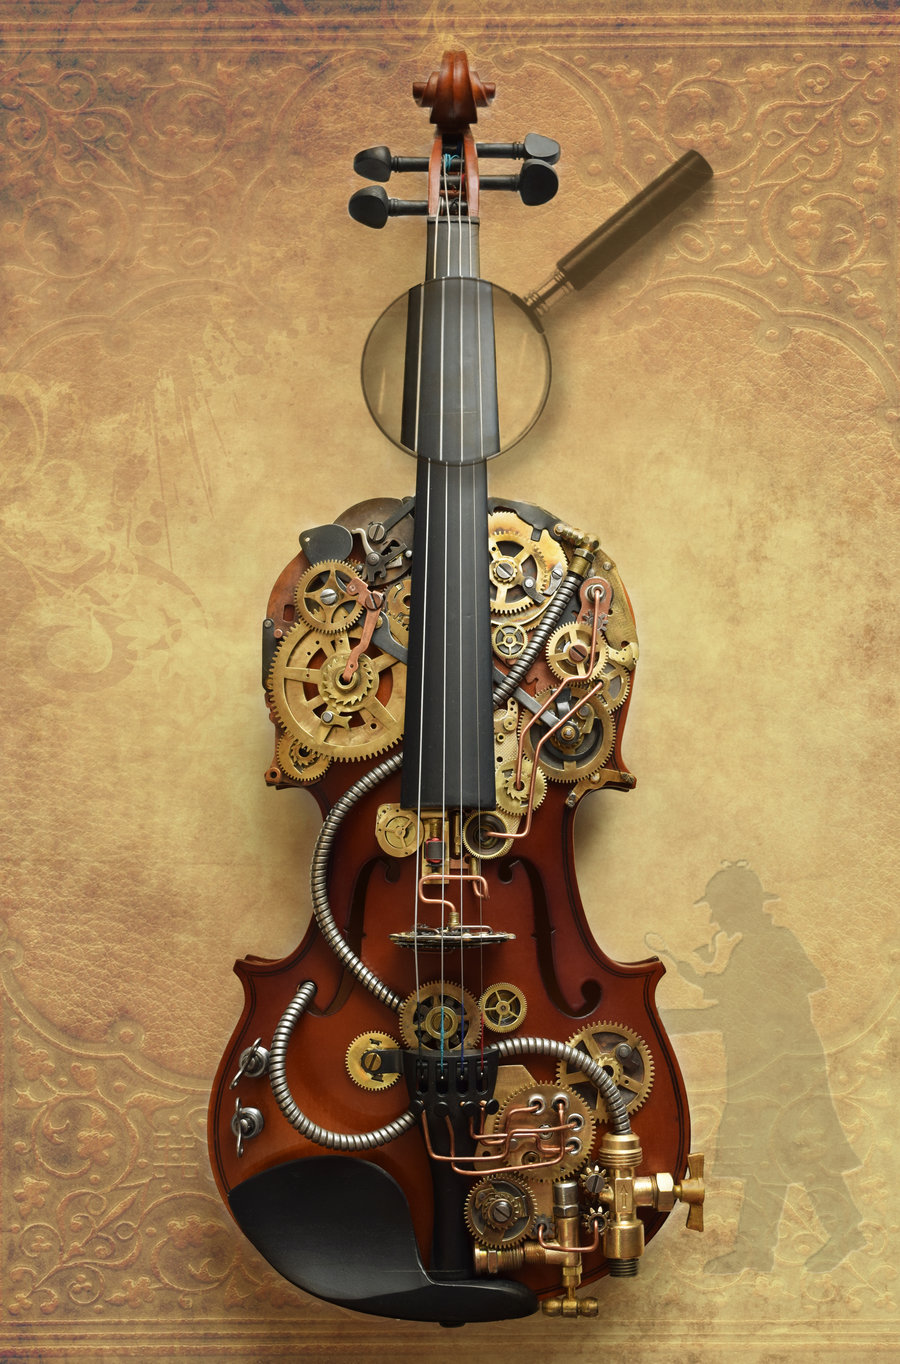 sherlock violin steampunk sculpture